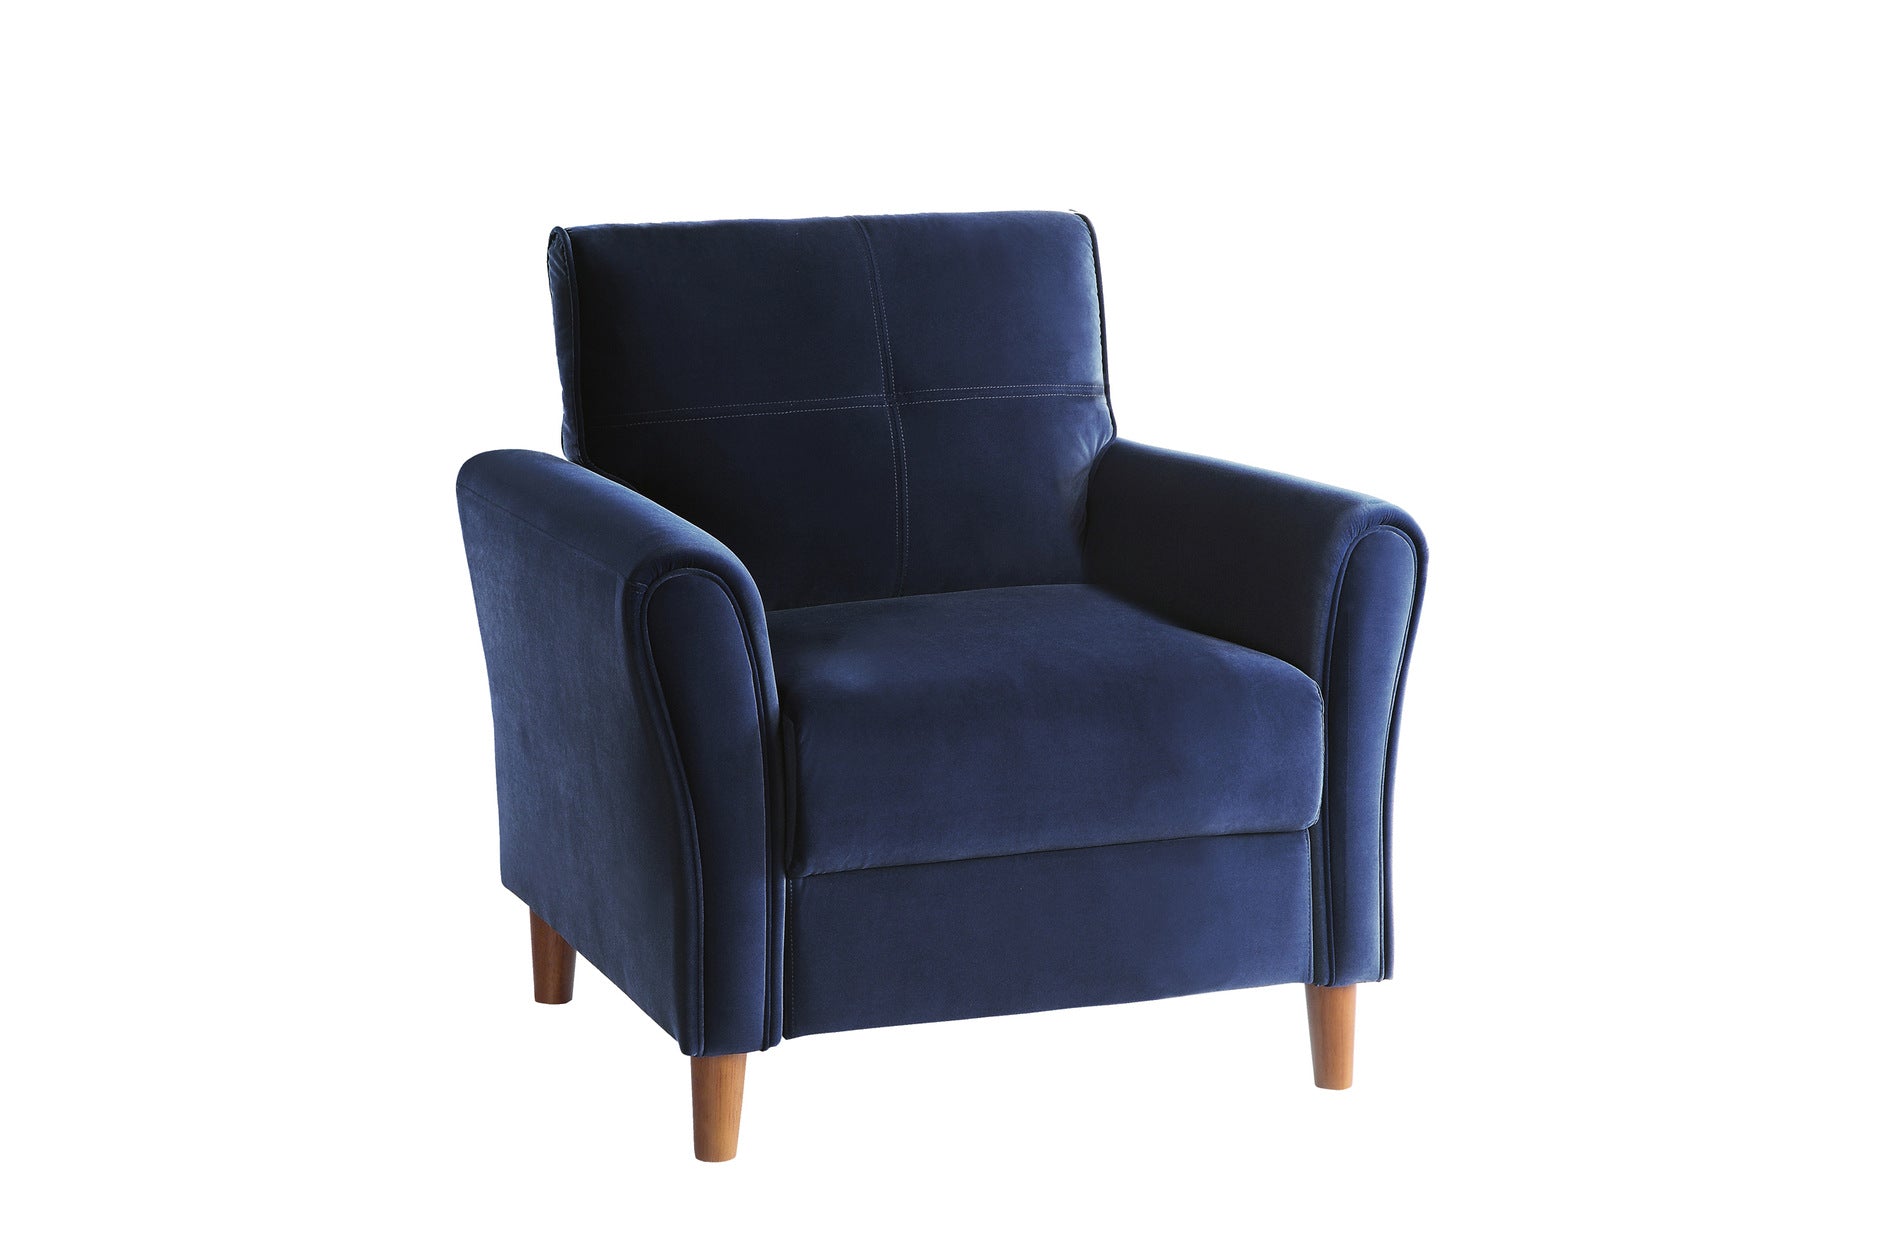 Dunleith Sofa Set Collection Blue 9348